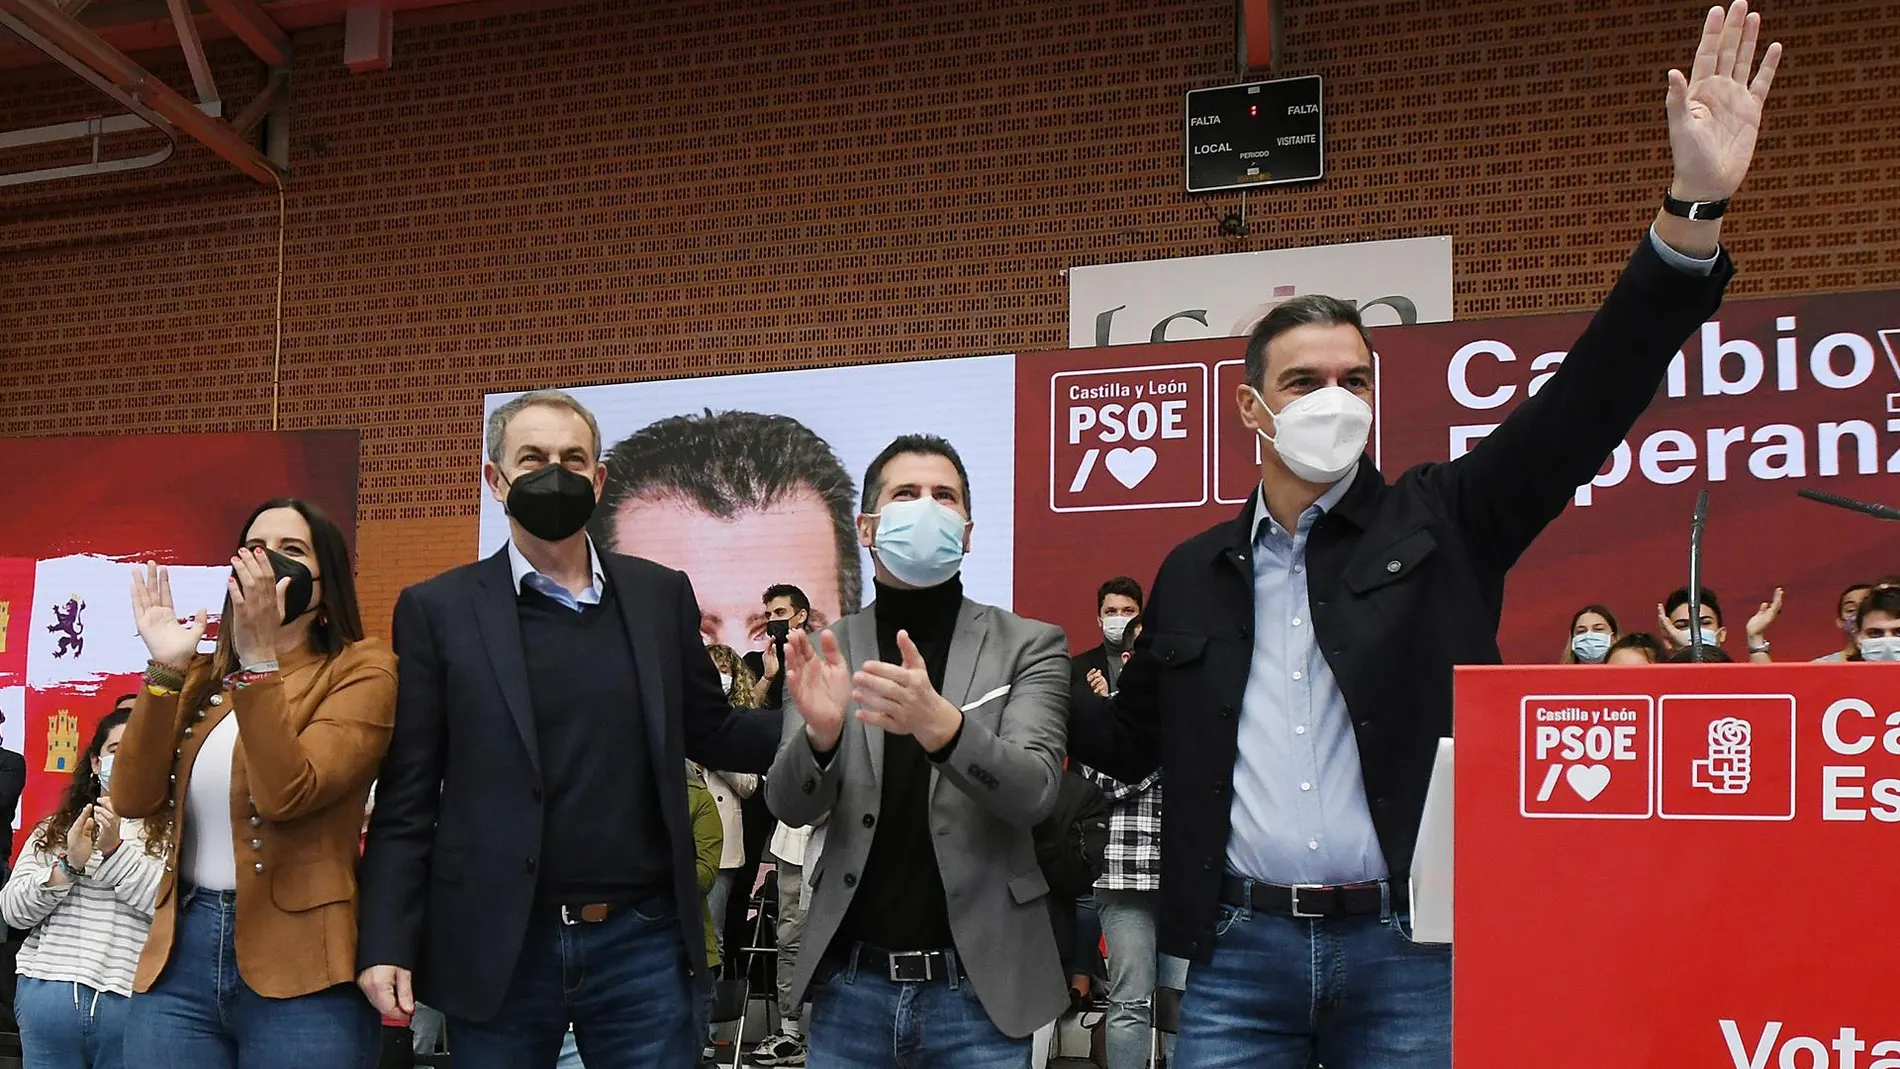 José Luis Rodríguez Zapatero y Pedro Sánchez acompañan a Luis Tudanca en la campaña de las elecciones de Castilla y León